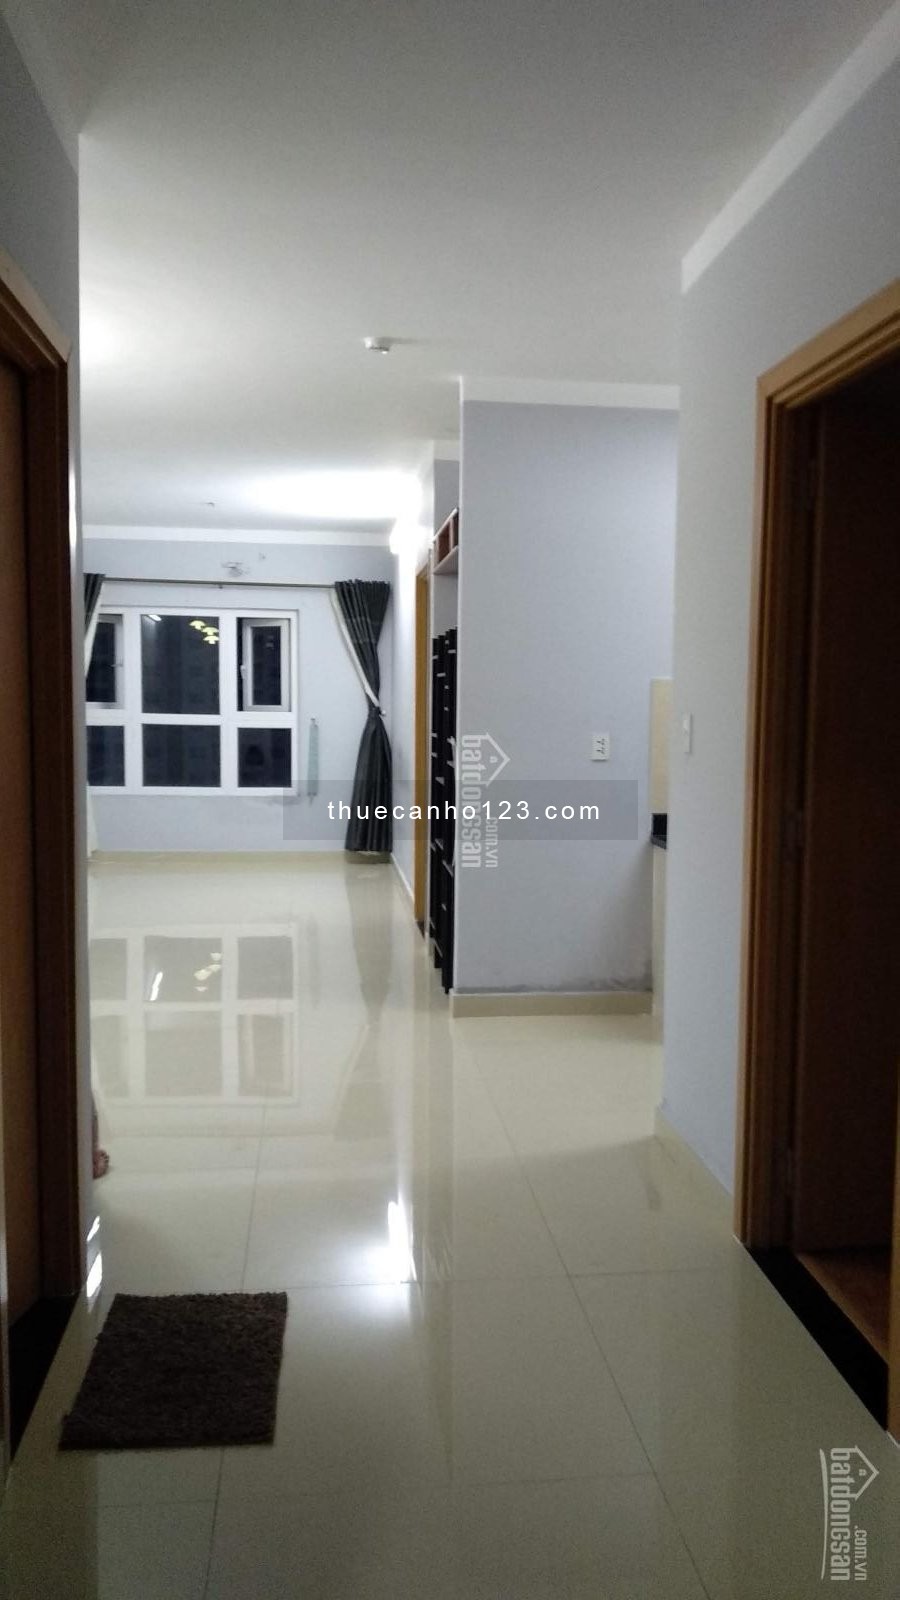 Chủ nhà cần cho thuê căn hộ Saigonres Plaza, nội thất cơ bản 72m², 2PN, giá 11tr/tháng